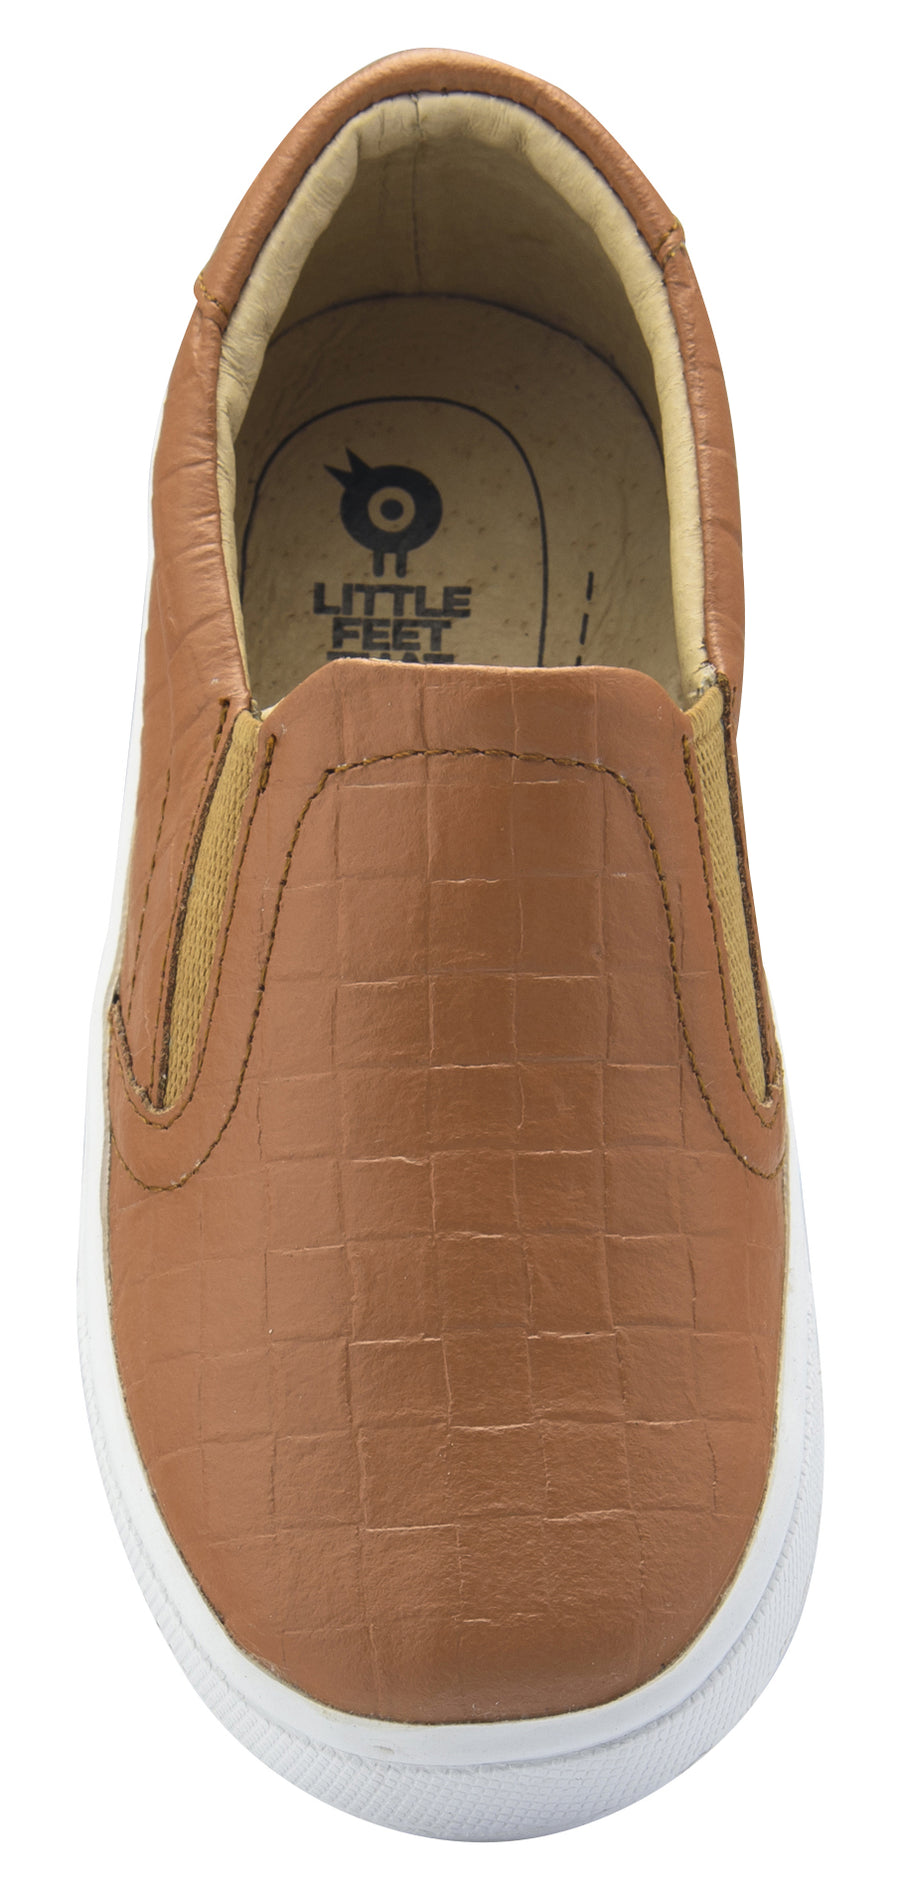 Old Soles Dressy Hoff Leather Sneakers, Tan Weave